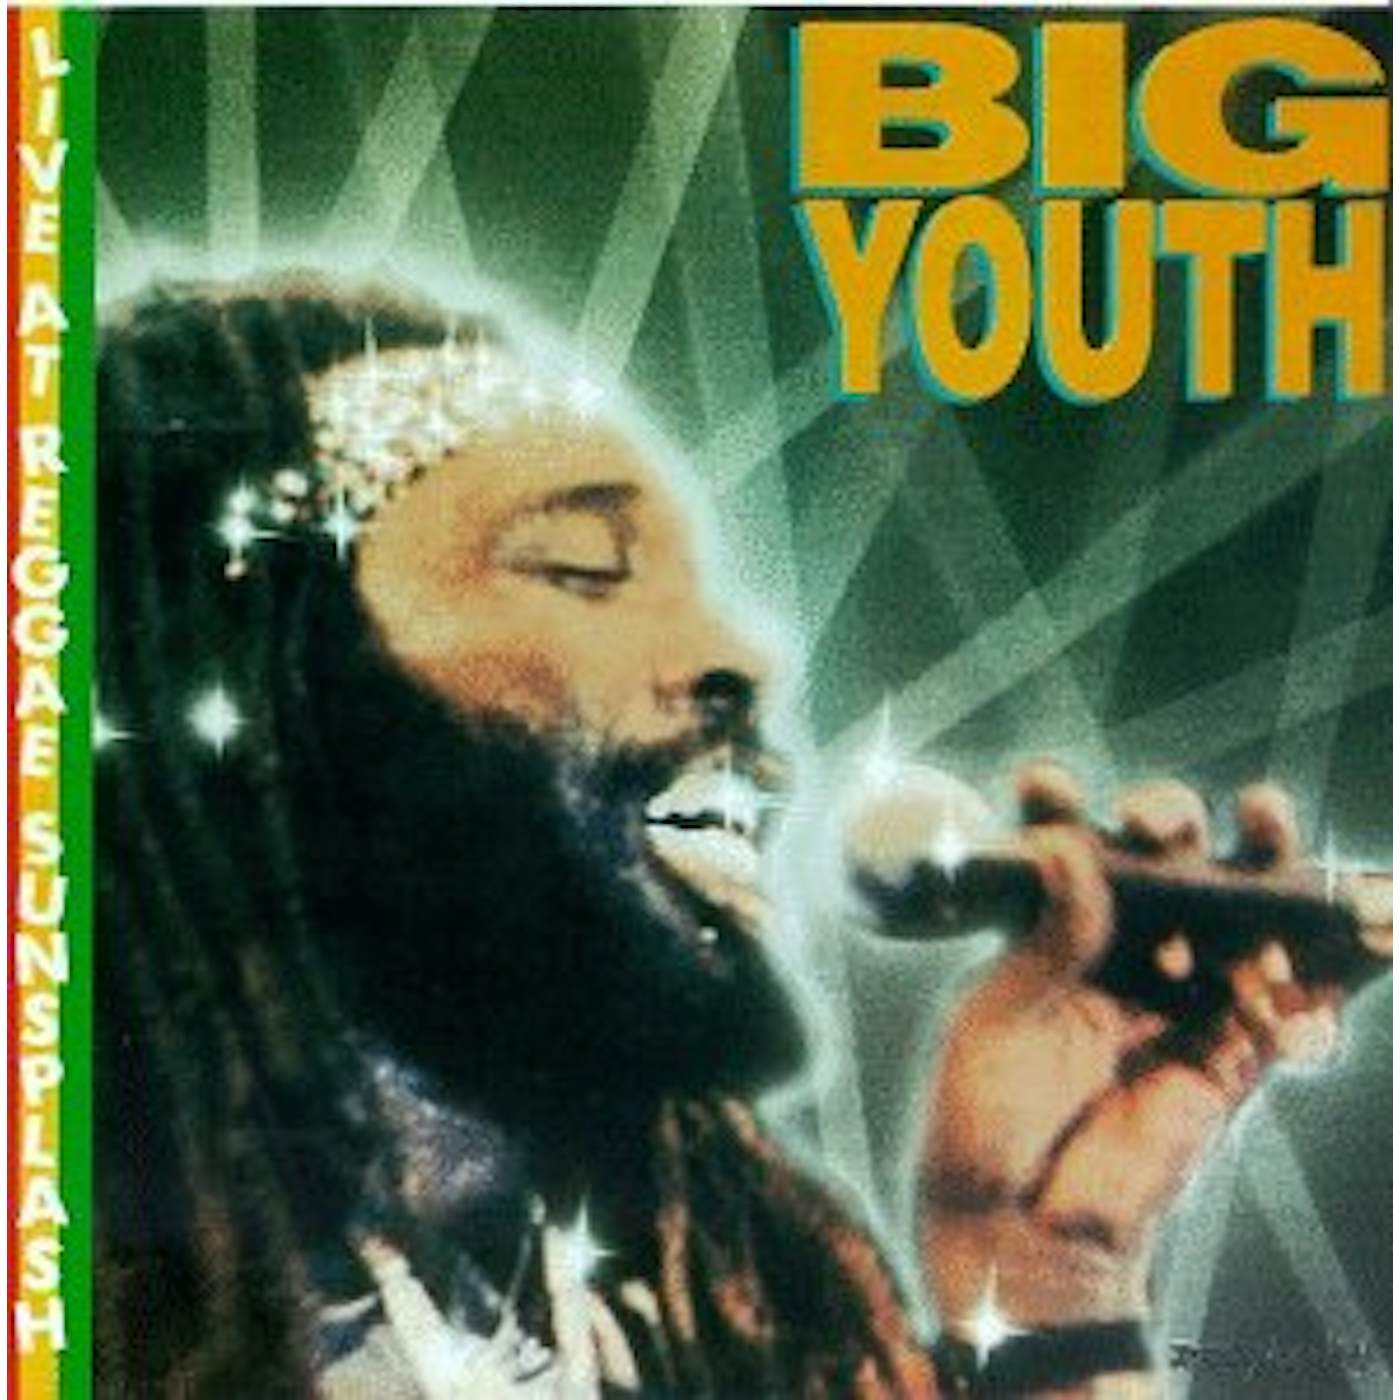 Big Youth LIVE AT REGGAE SUNSPLASH CD